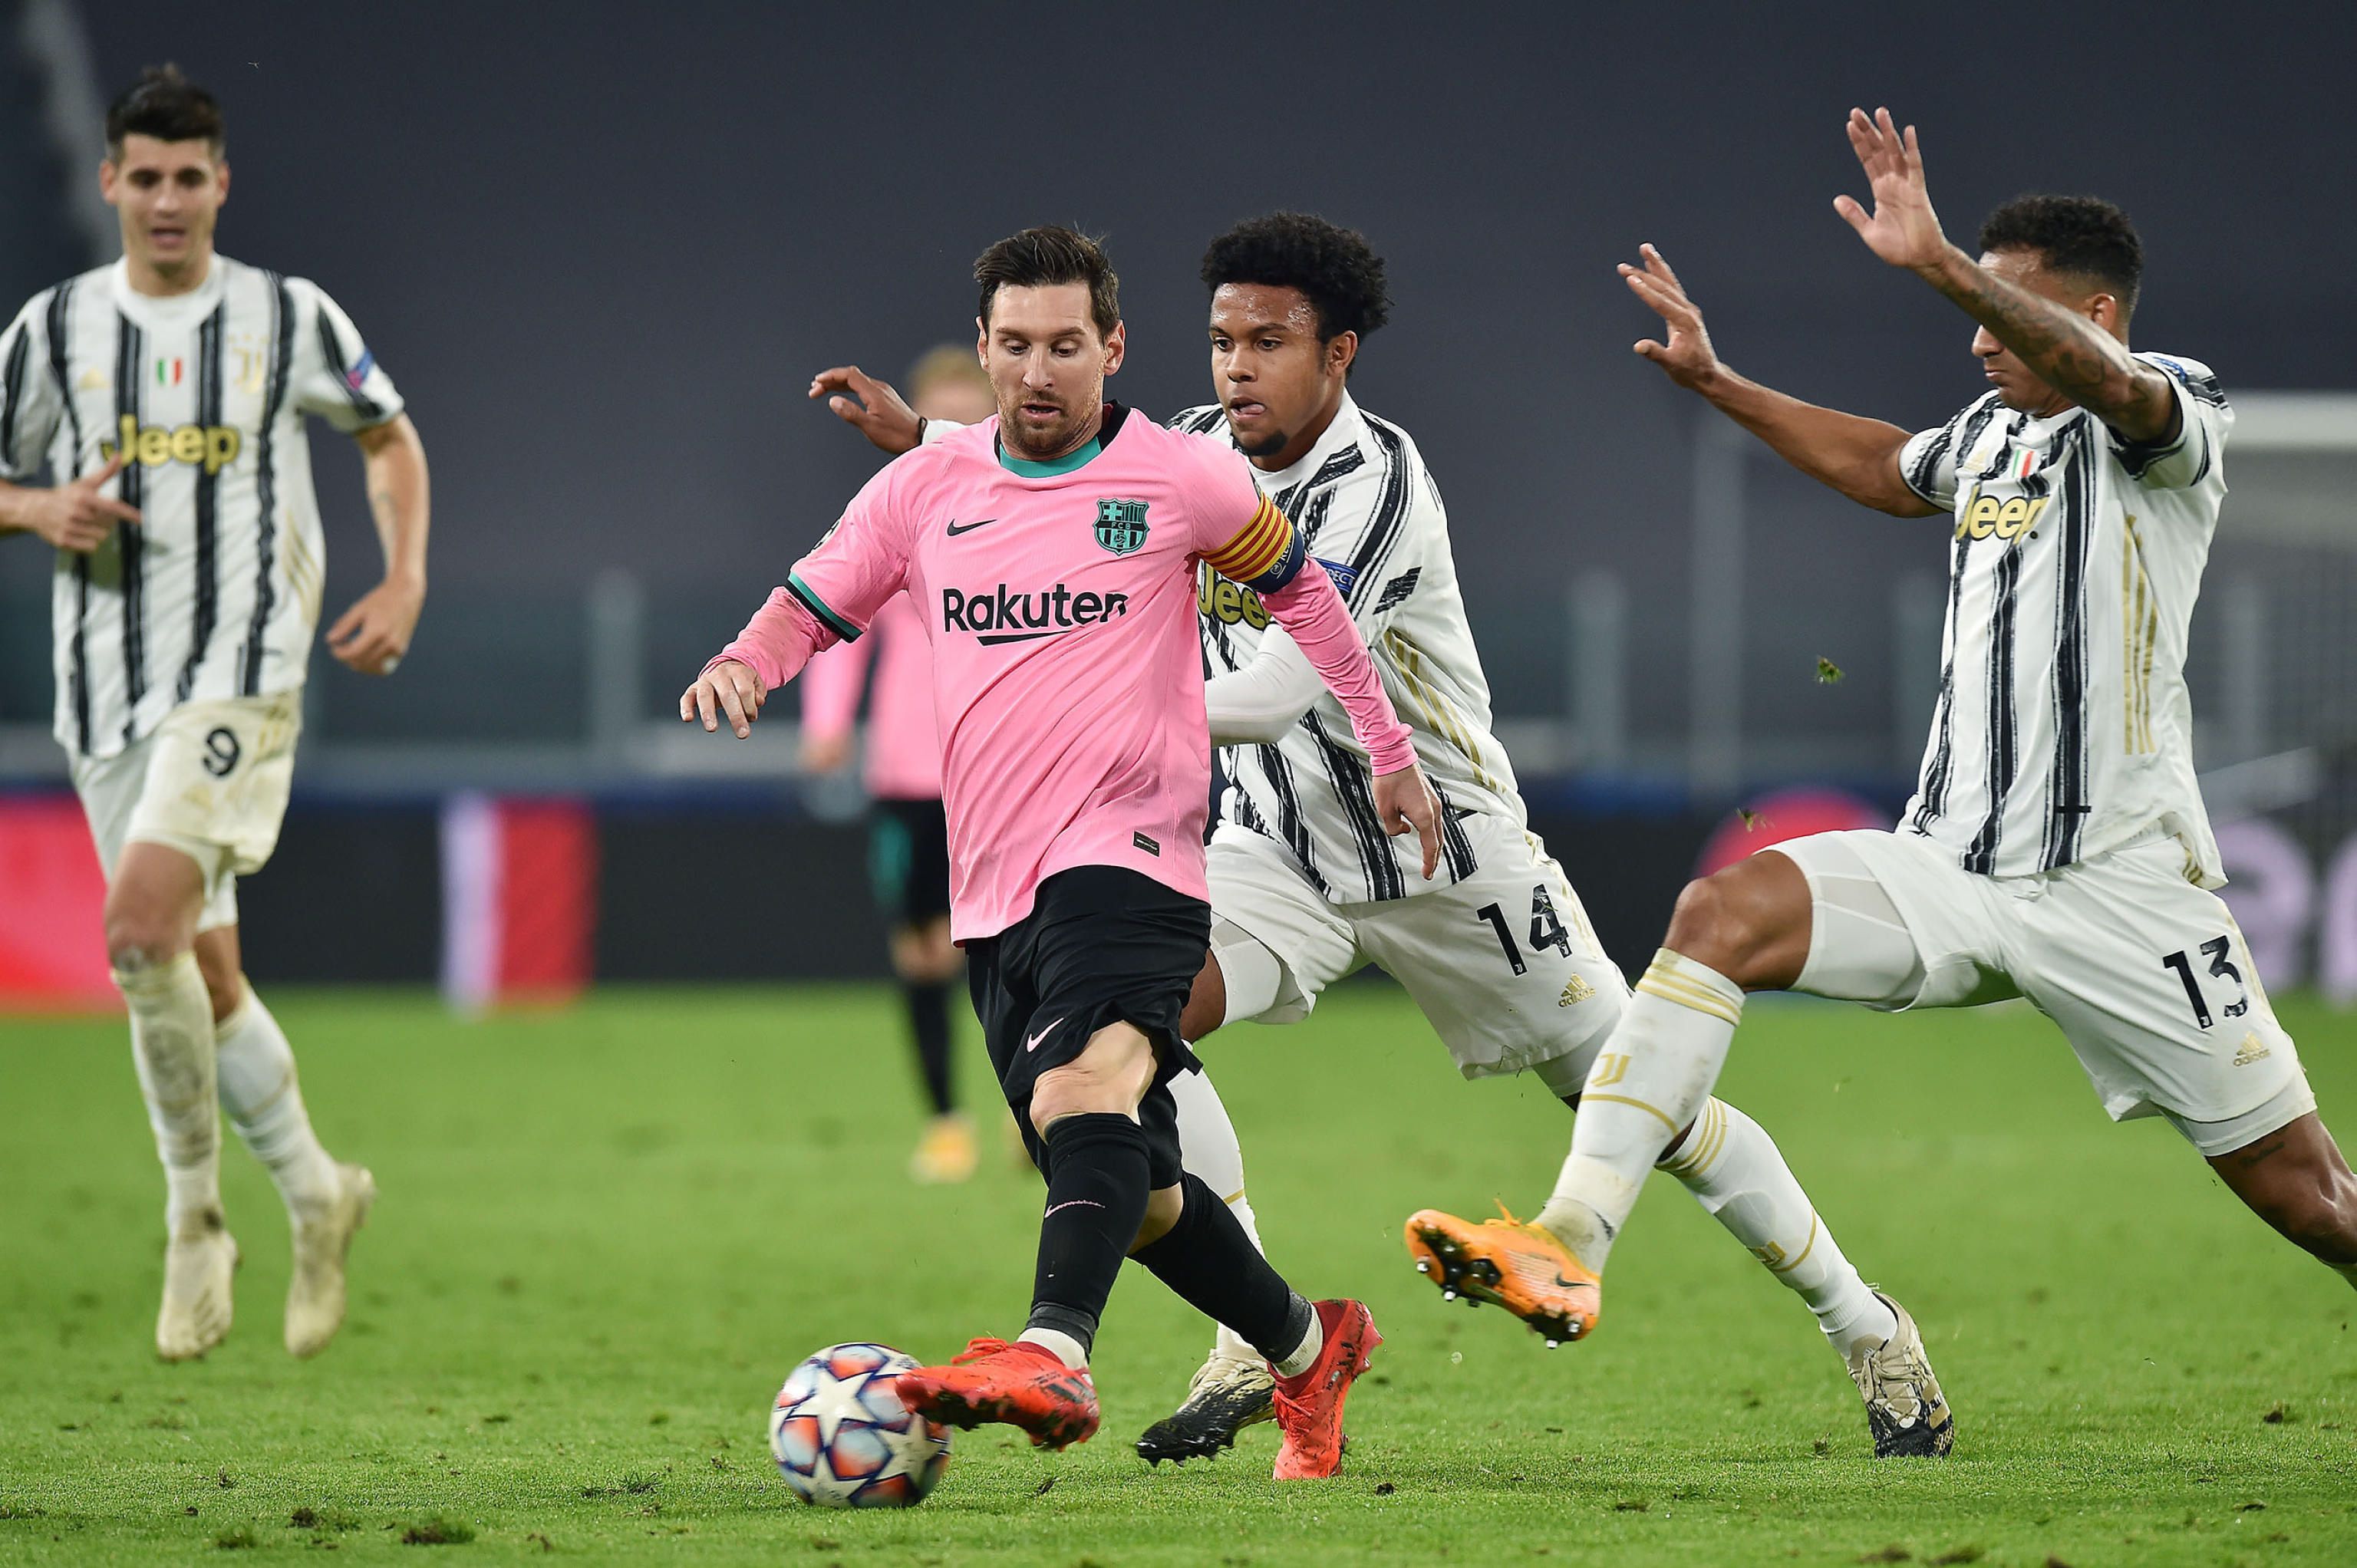 Lionel Messi a Juventus-védők gyűrűjében, a Barca idegenben verte riválisát 2-0-ra. / Fotó: EPA/Alessandro di Marco.